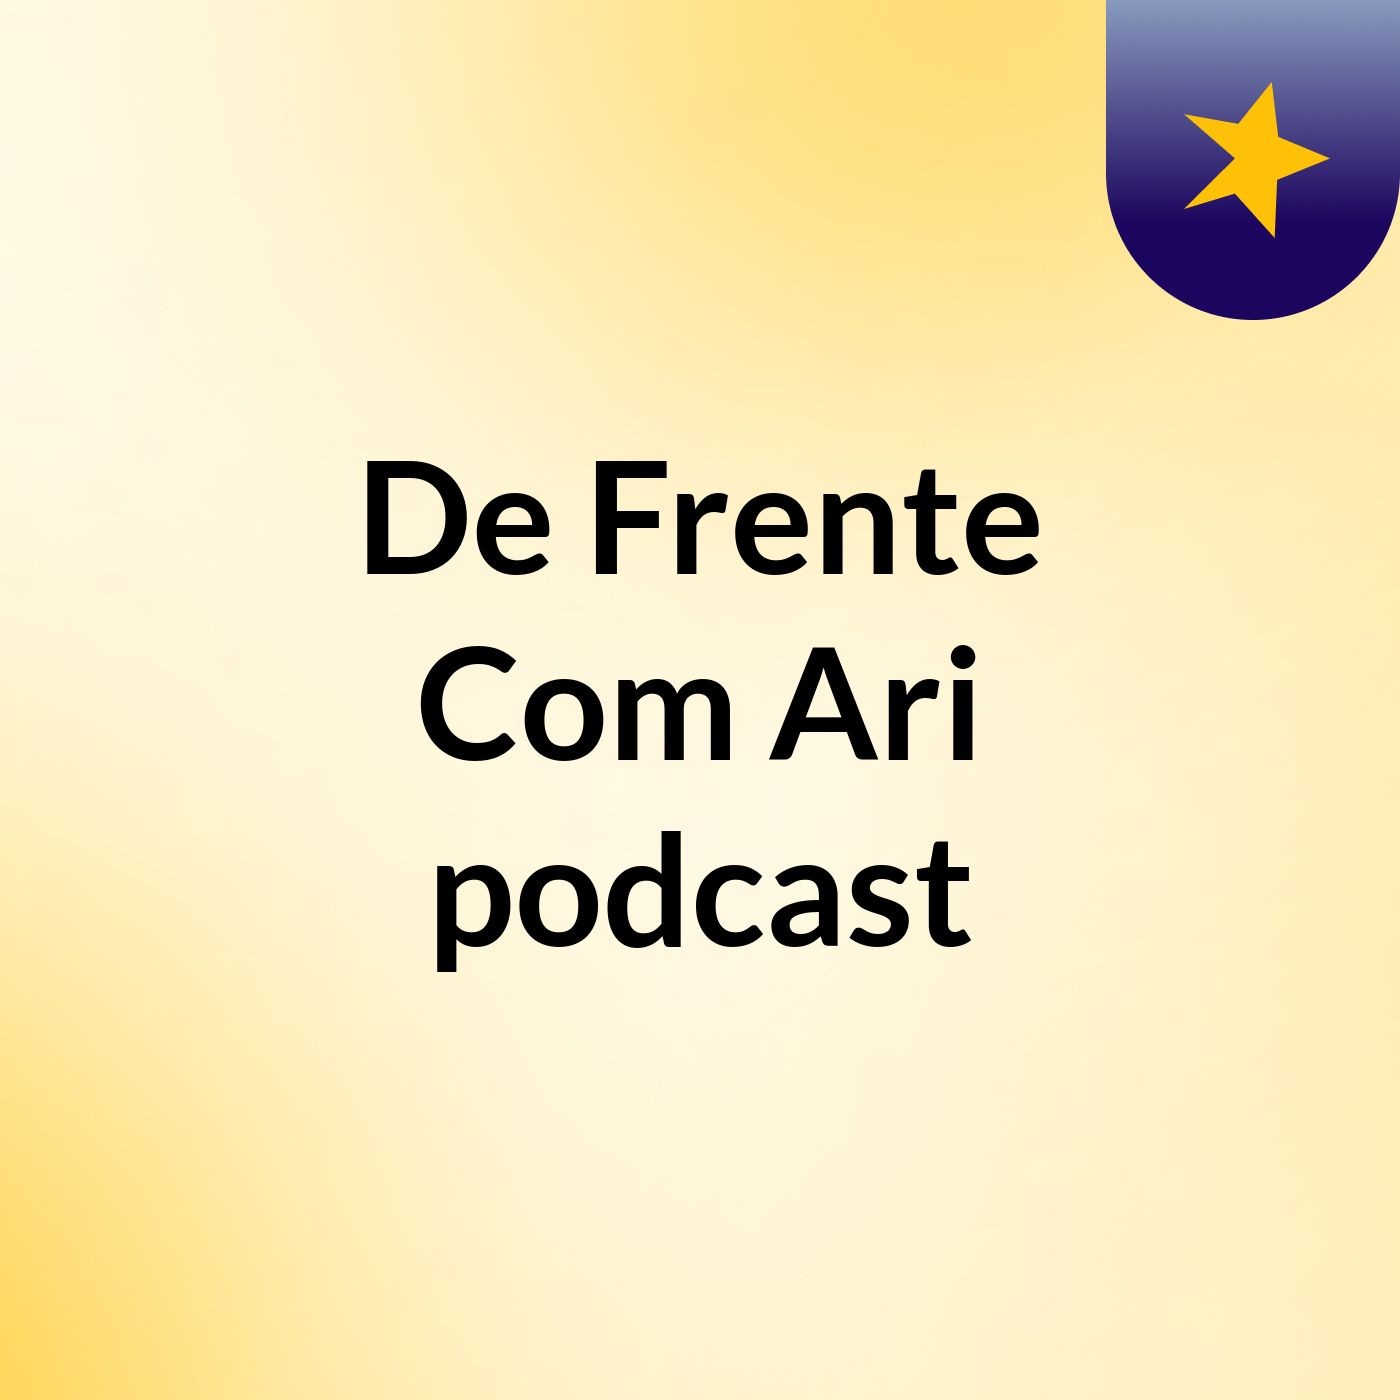 De Frente Com Ari podcast